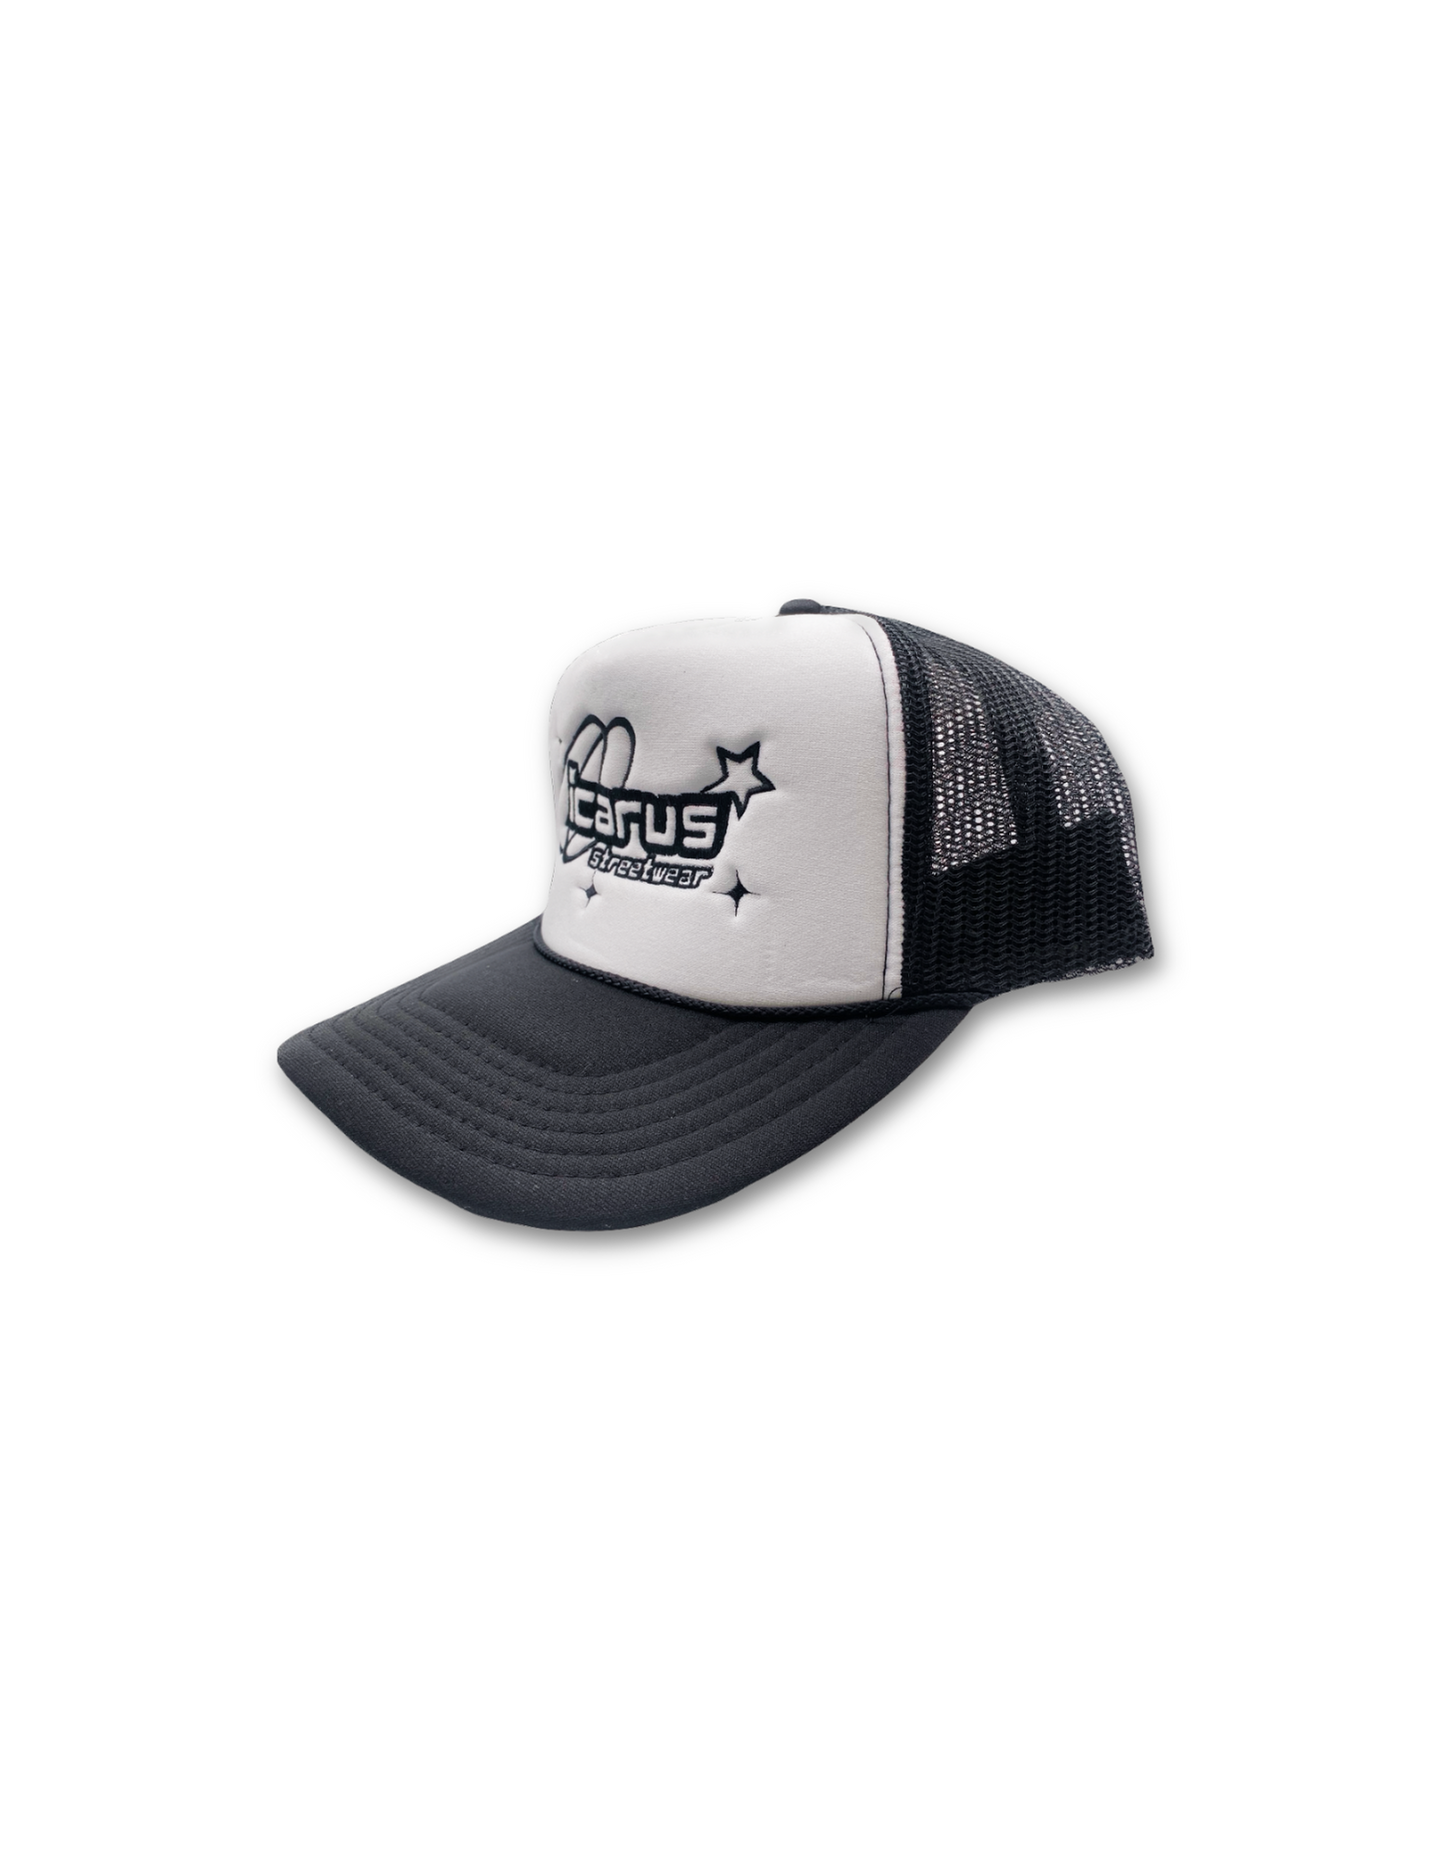 Icarus Streetwear Black/White Trucker Hat